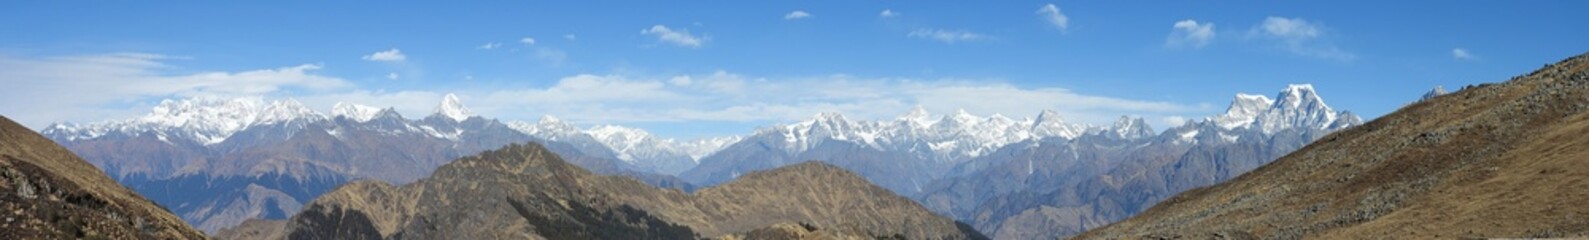 grass and sky Panorama of Himalayan mountain range visible from Kuari pass trek